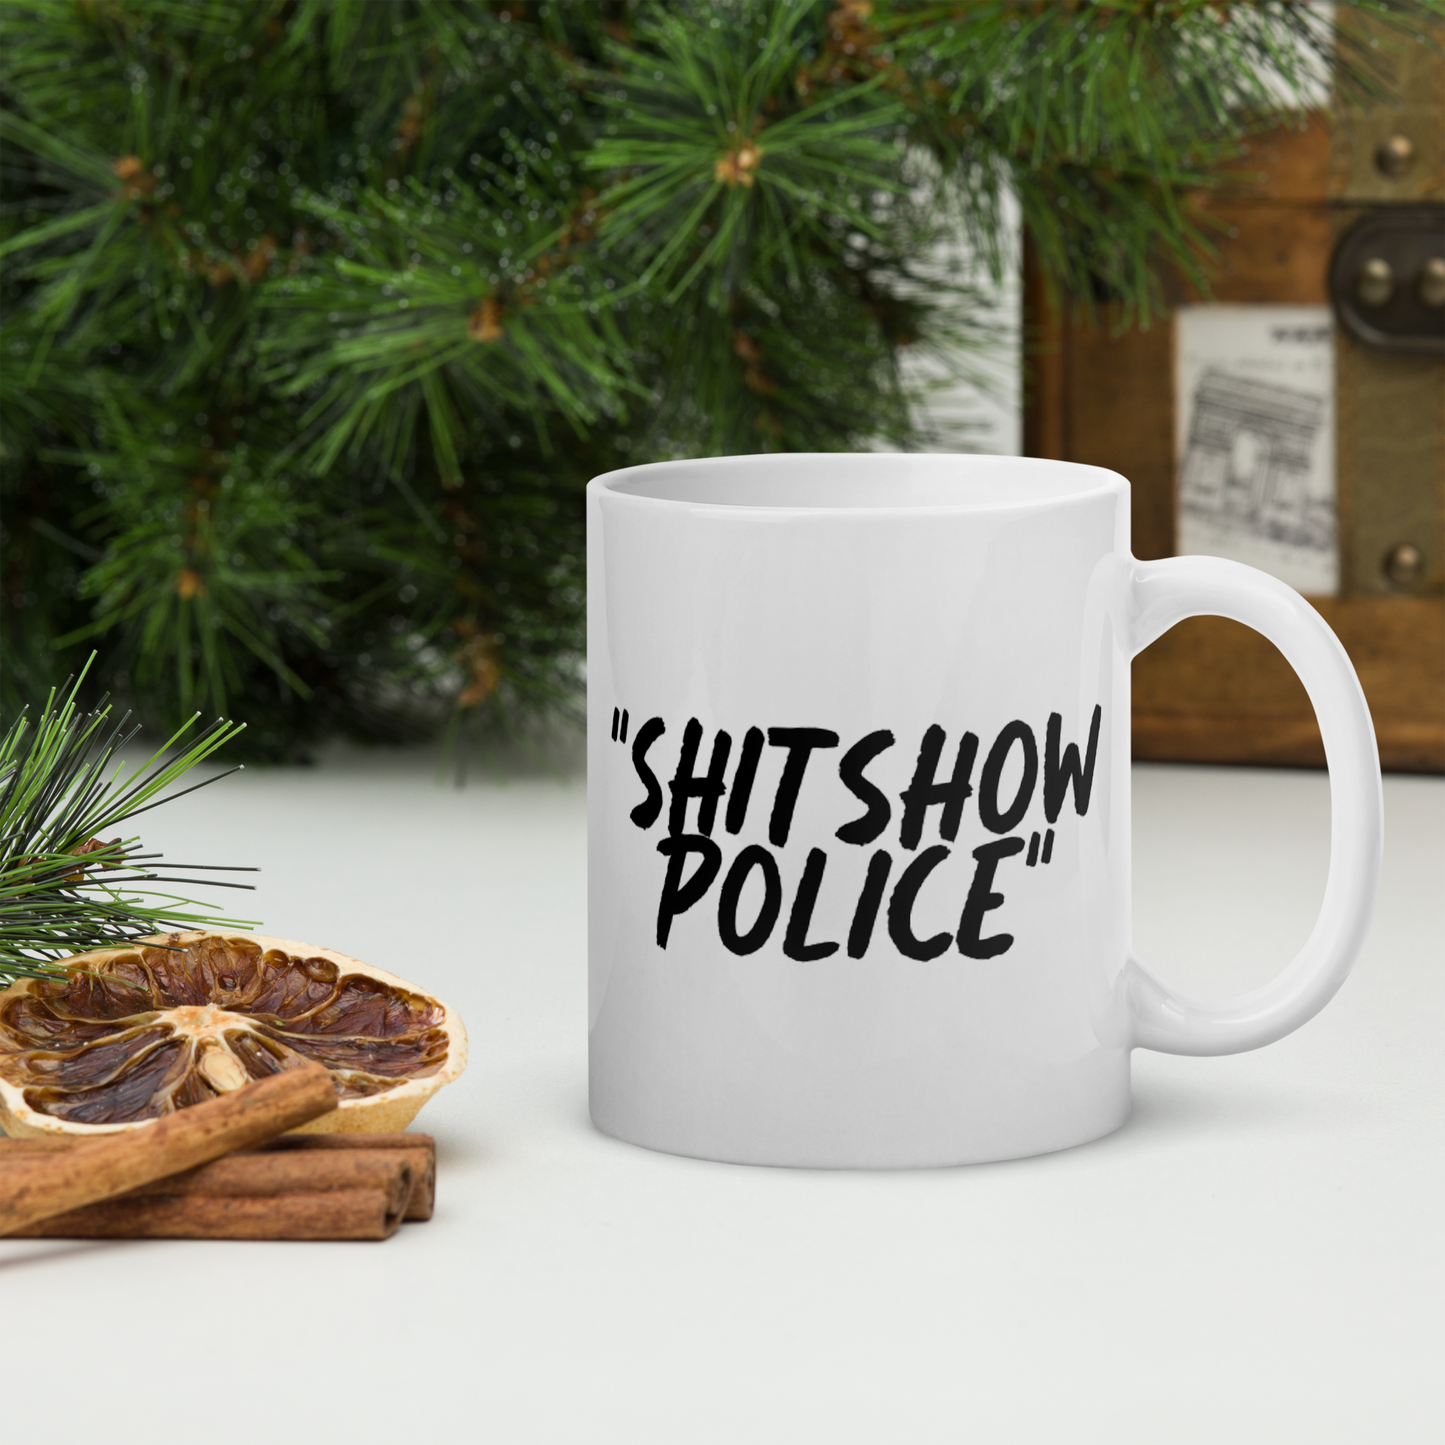 Show Police White Mug